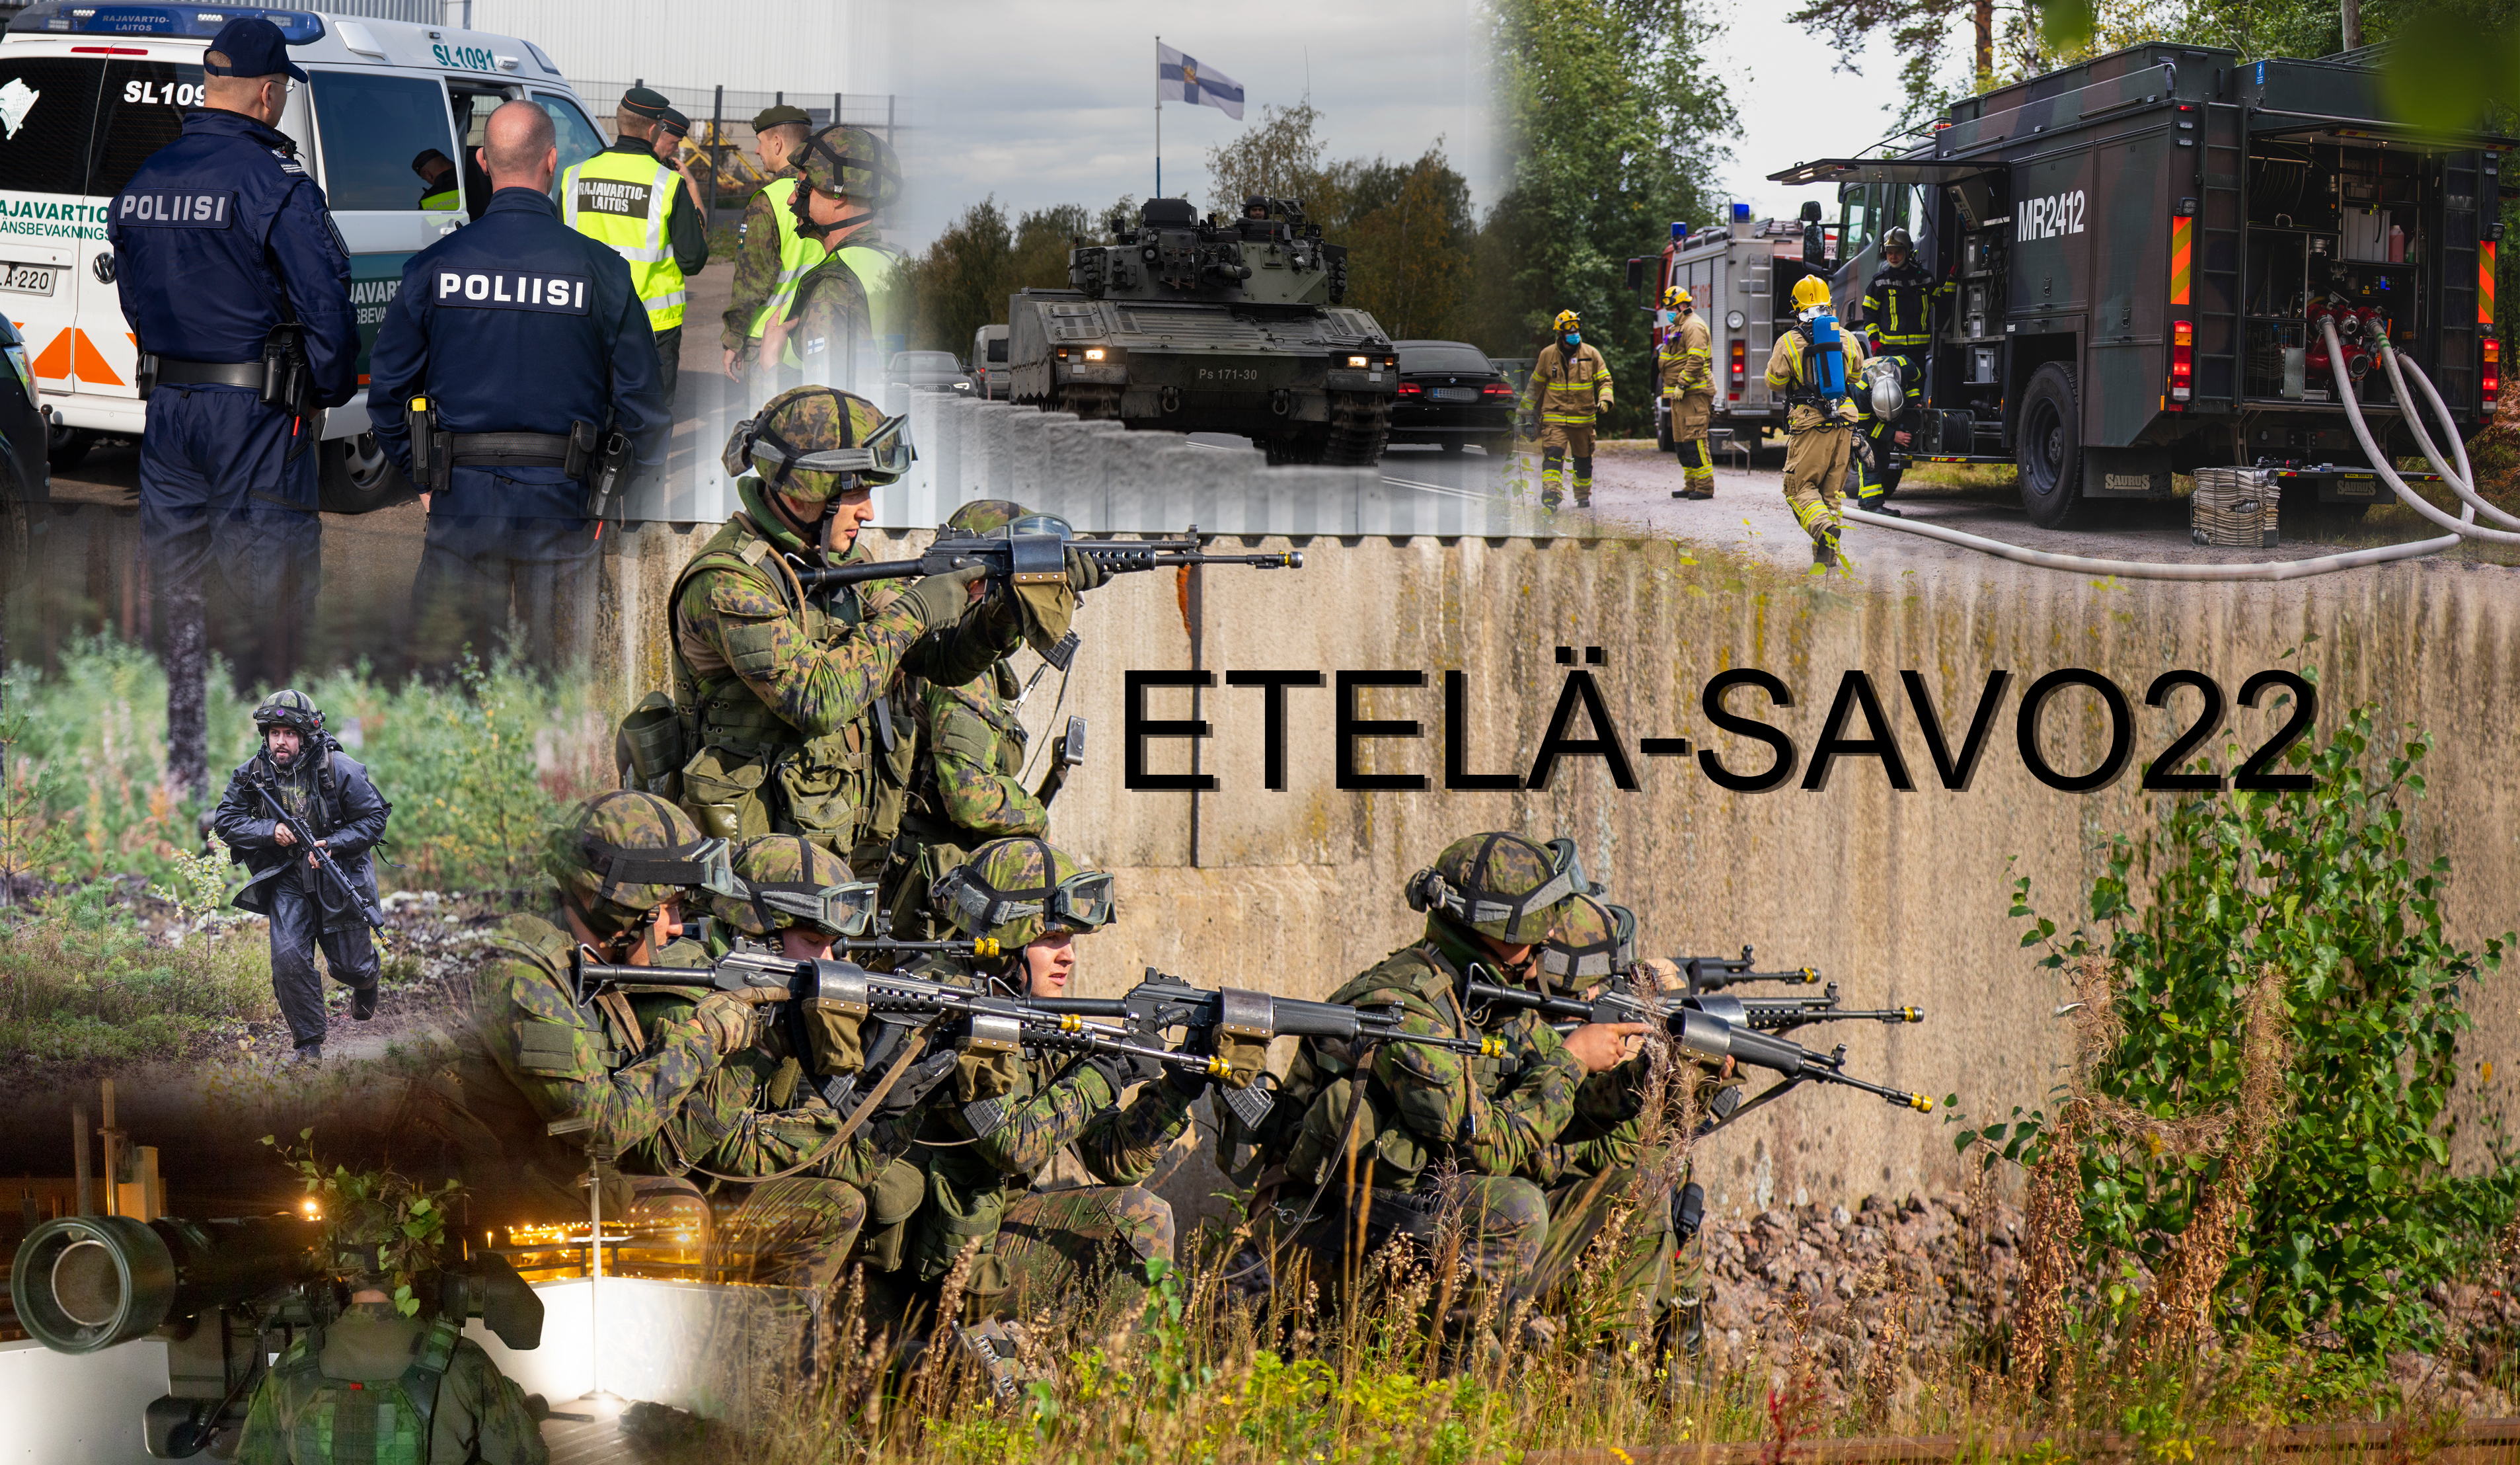 Etelä-Savo 22 -paikallispuolustusharjoitus tuo harjoitusjoukot Savonlinnaan  